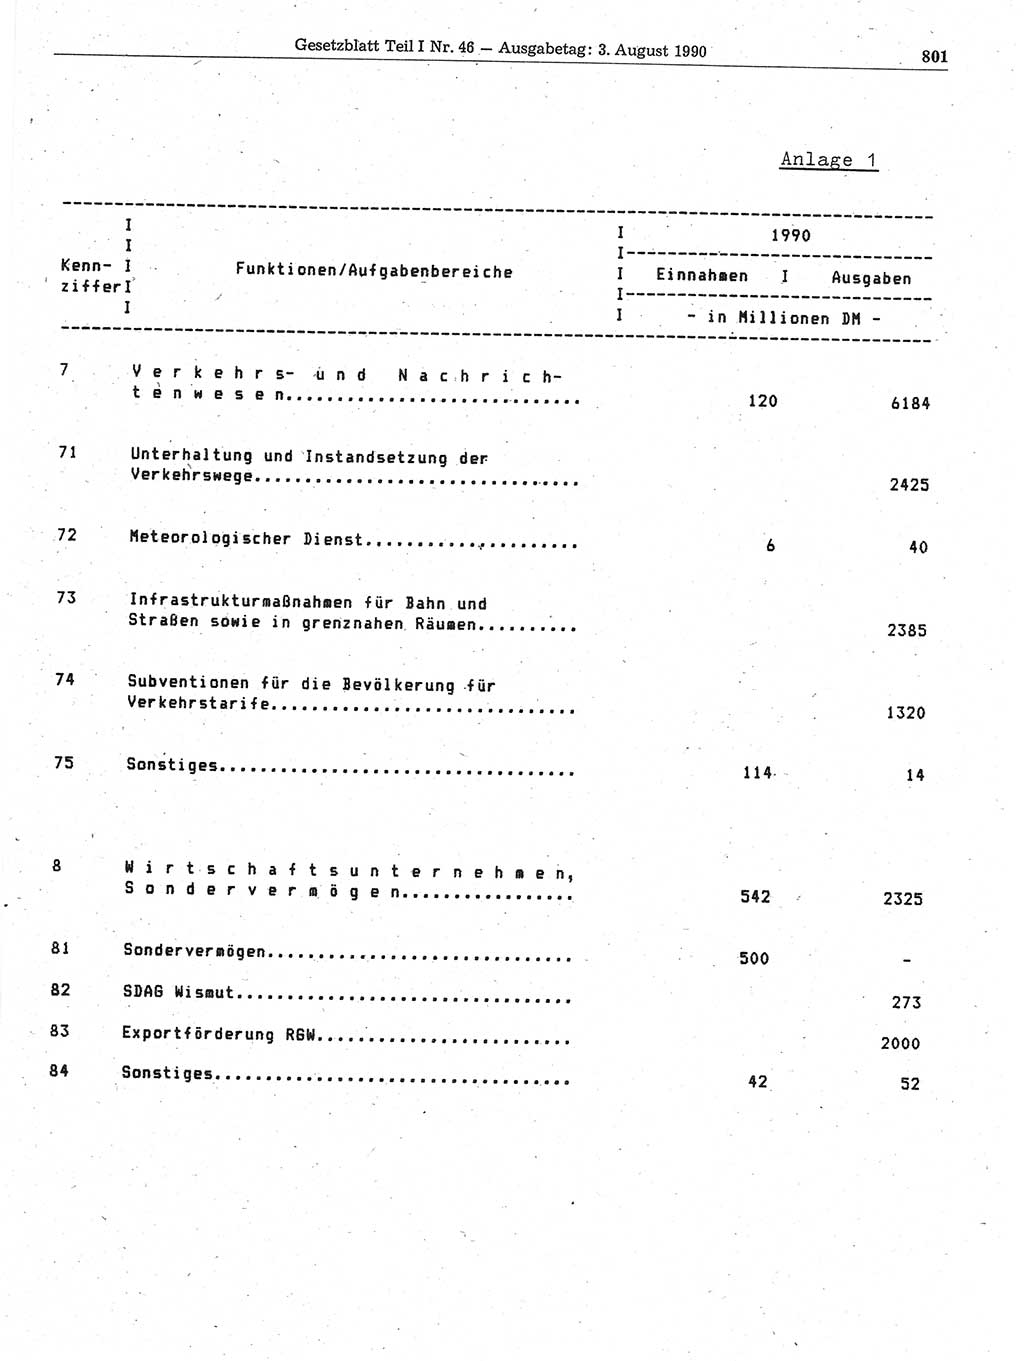 Gesetzblatt (GBl.) der Deutschen Demokratischen Republik (DDR) Teil Ⅰ 1990, Seite 801 (GBl. DDR Ⅰ 1990, S. 801)